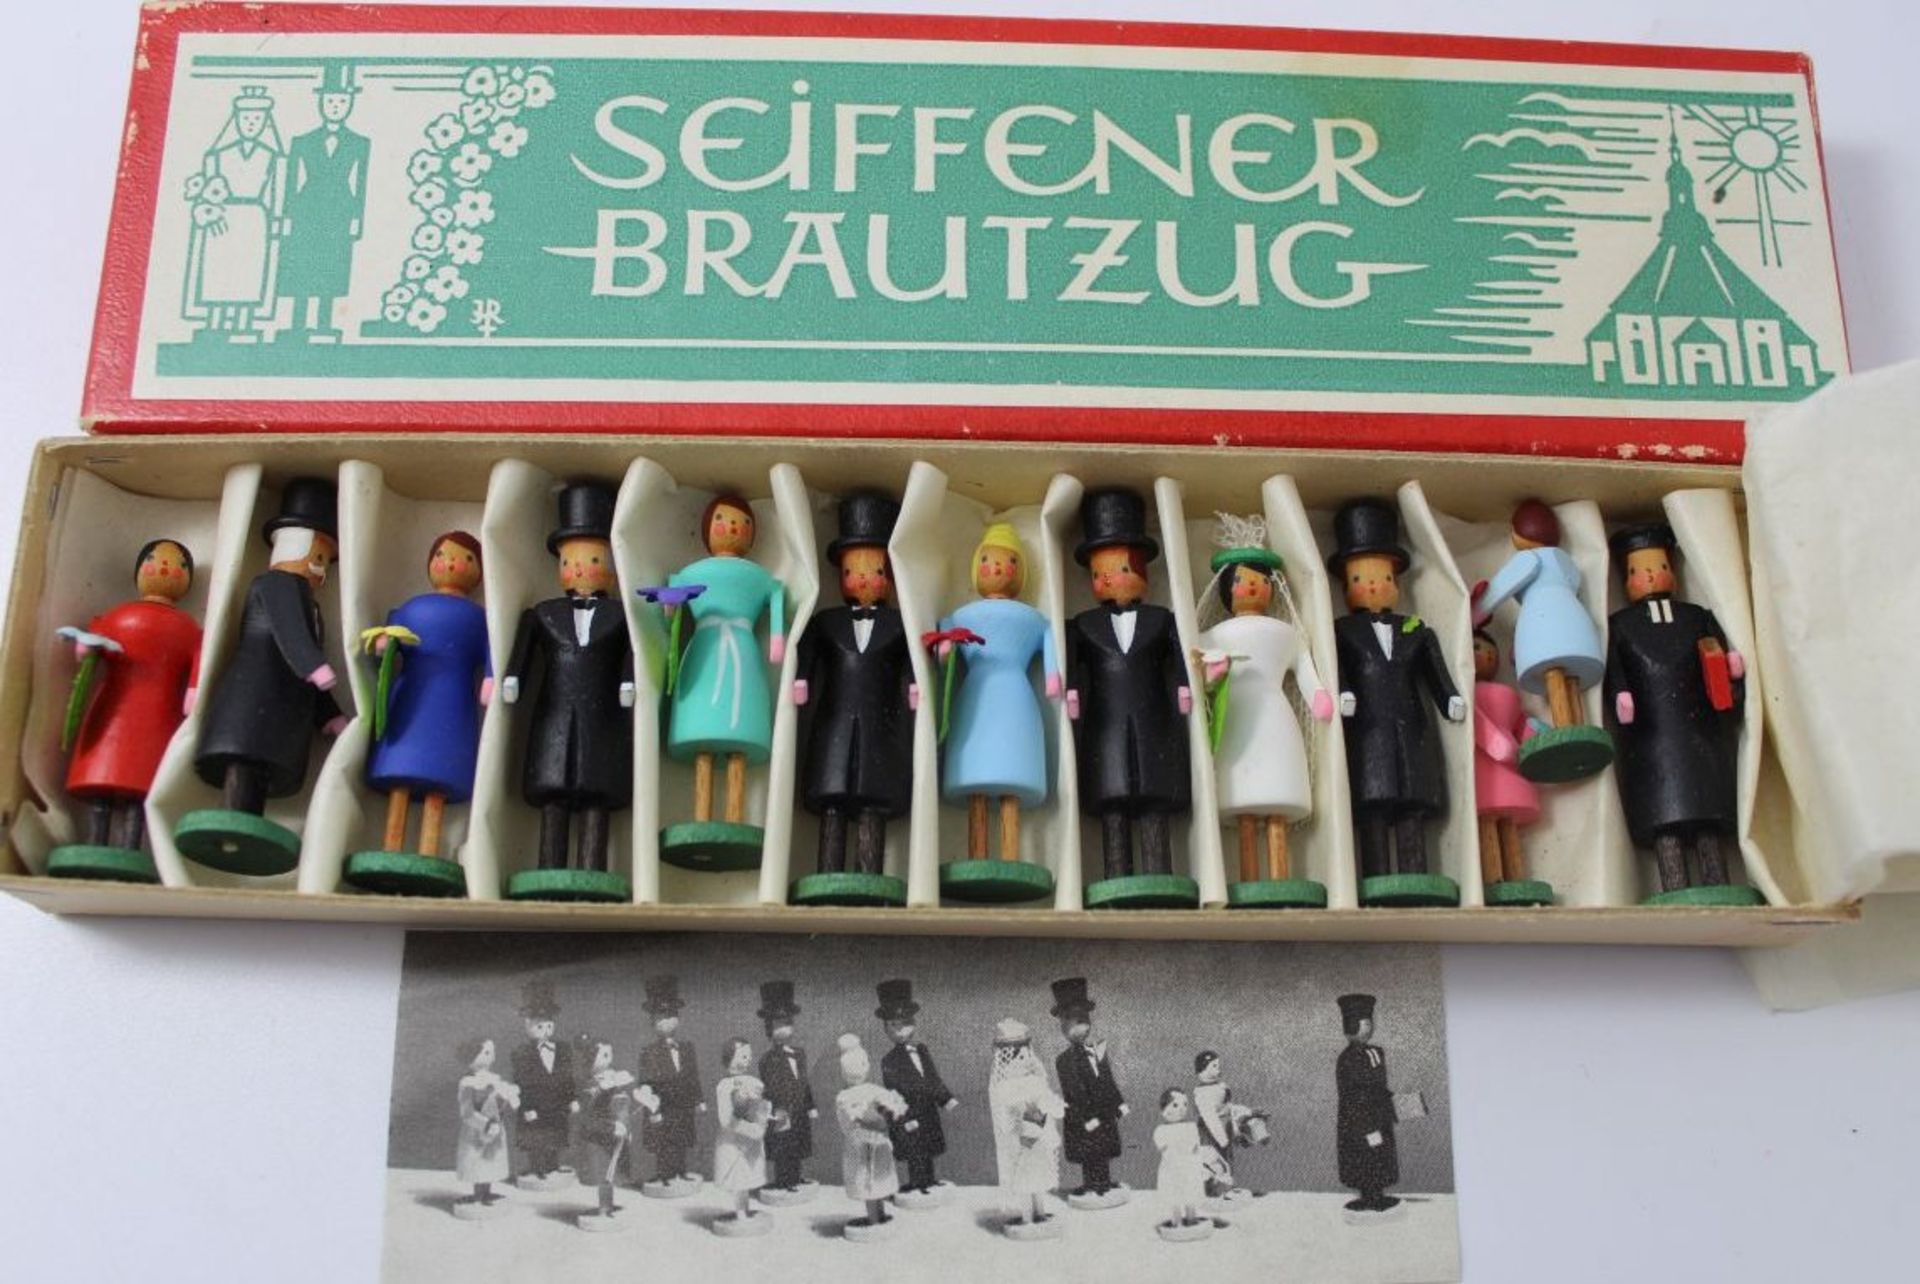 orig. Erzgebirge "Seiffener Brautzug" in orig. Karton, 13 Figuren